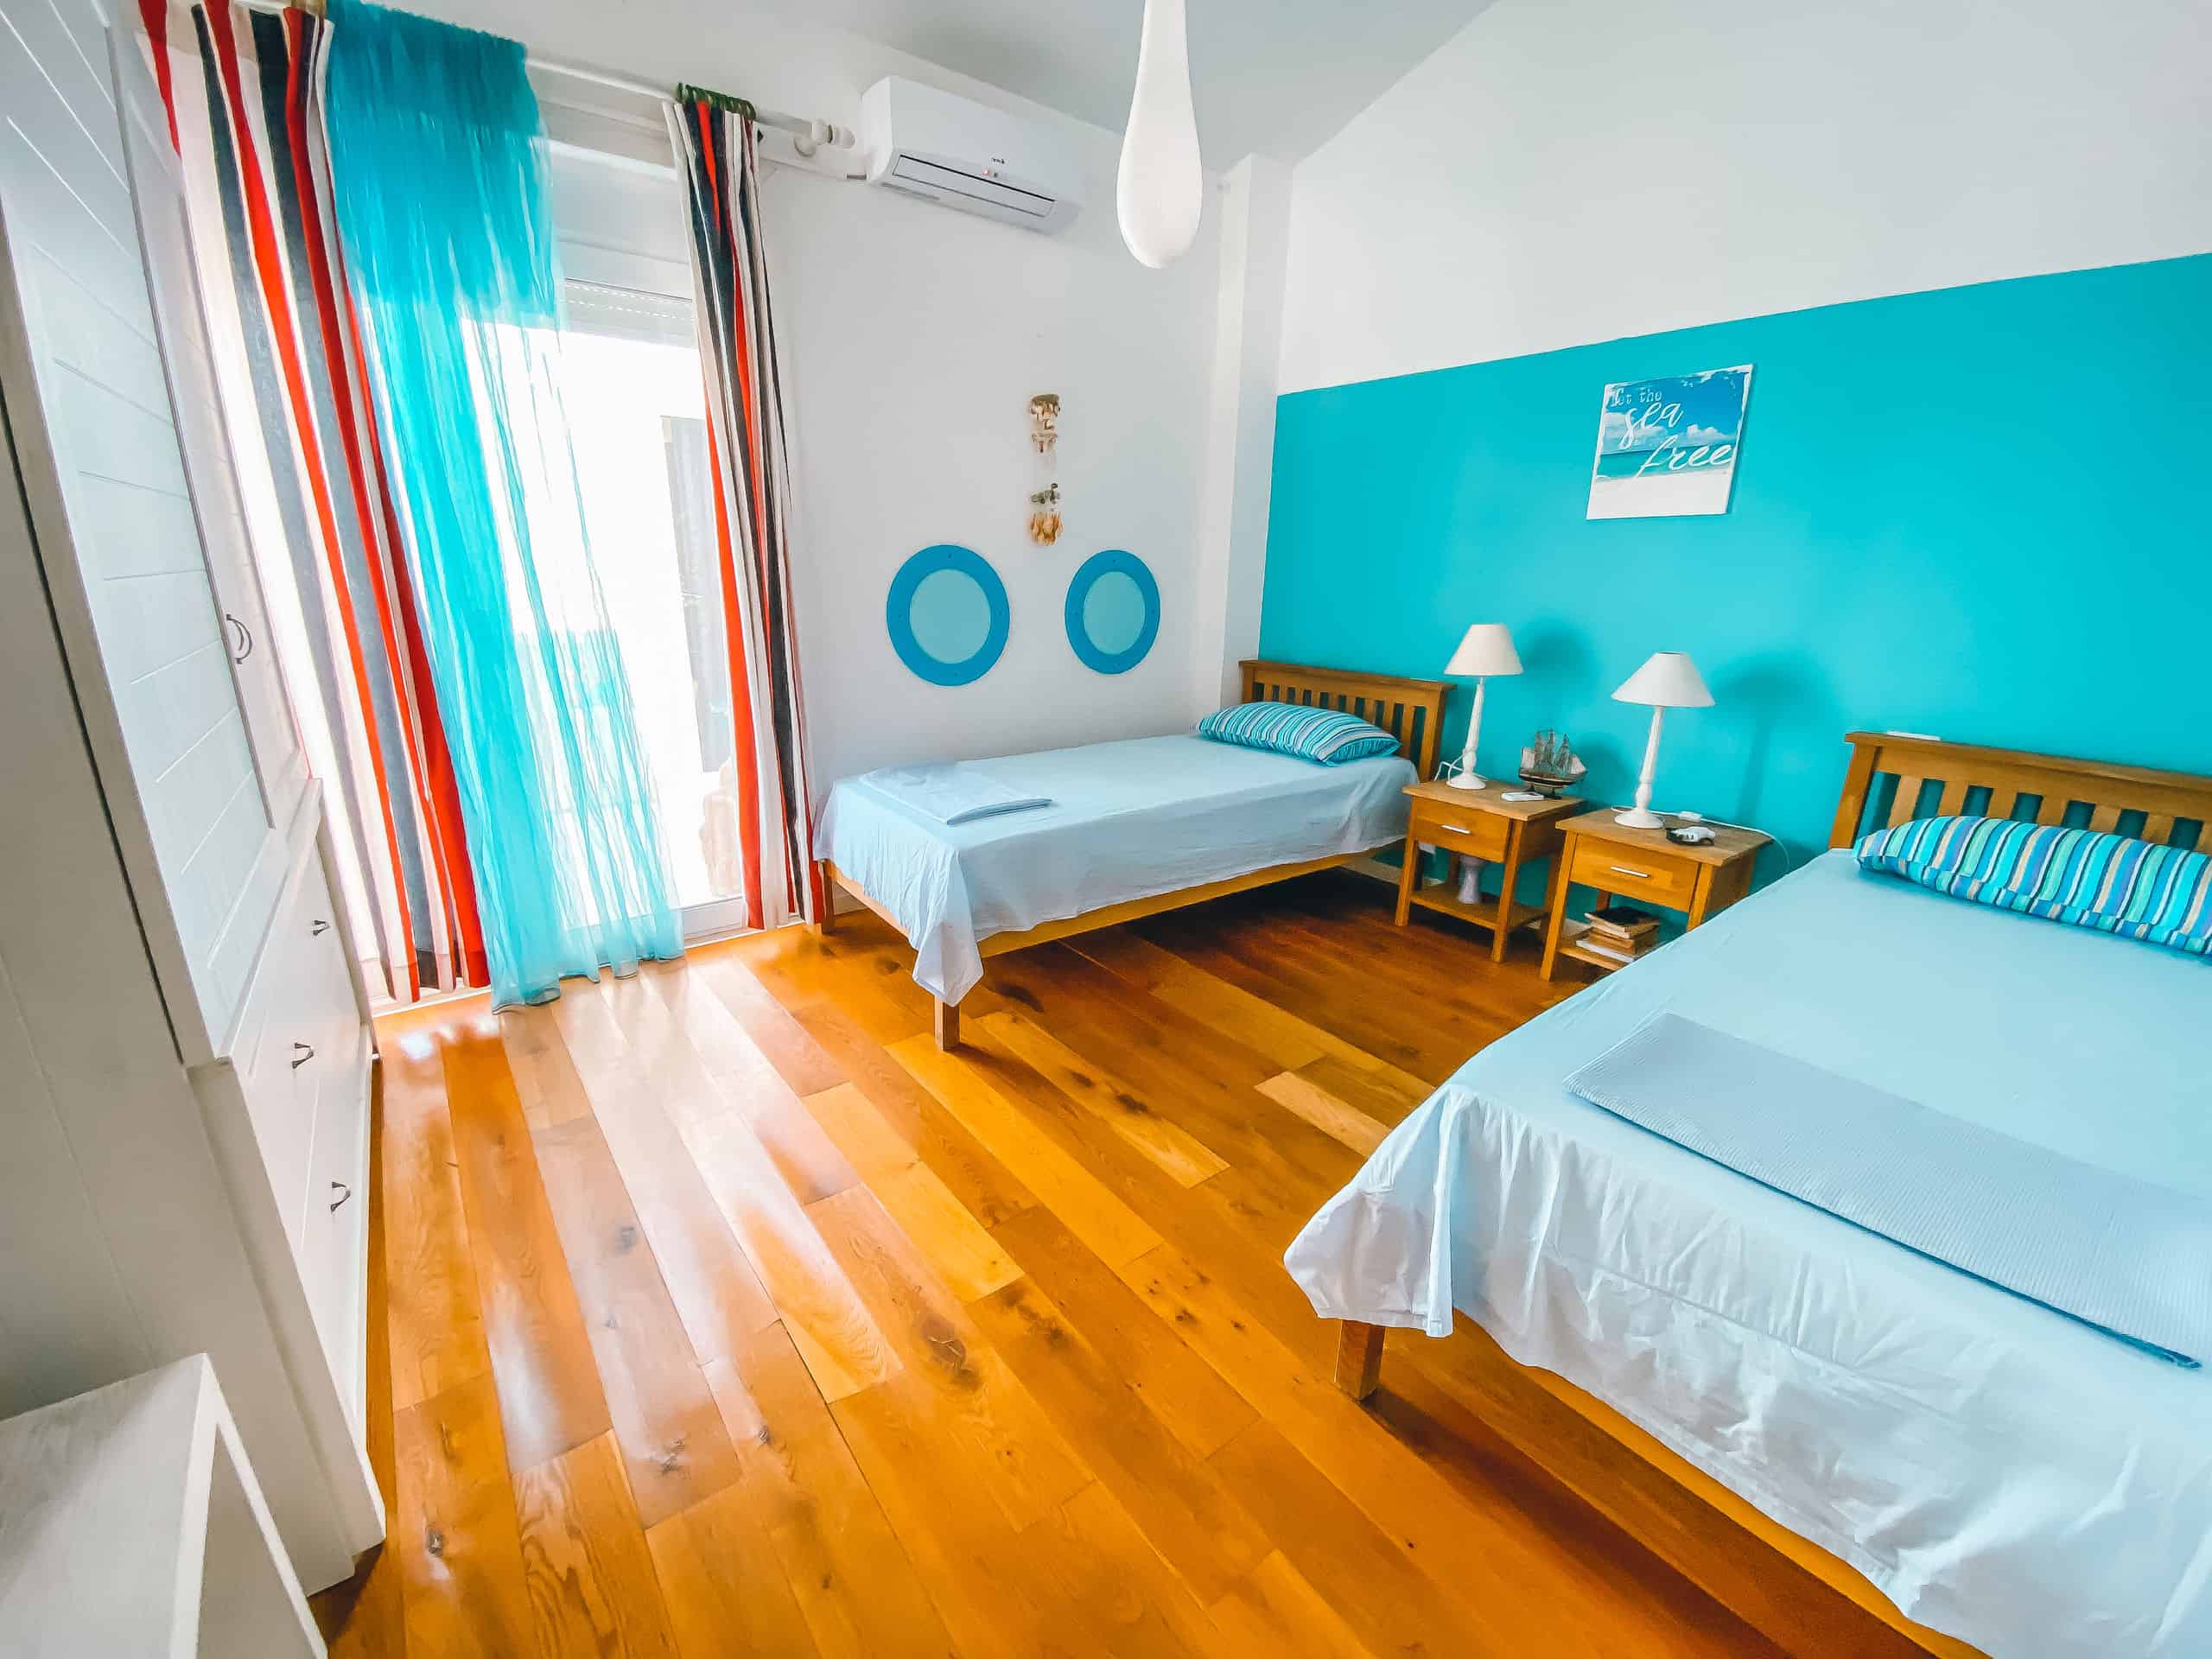 Apartments Bellavista urlop wakacje w Albanii Qerret Kavaje Durrës apartament do wynajęcia